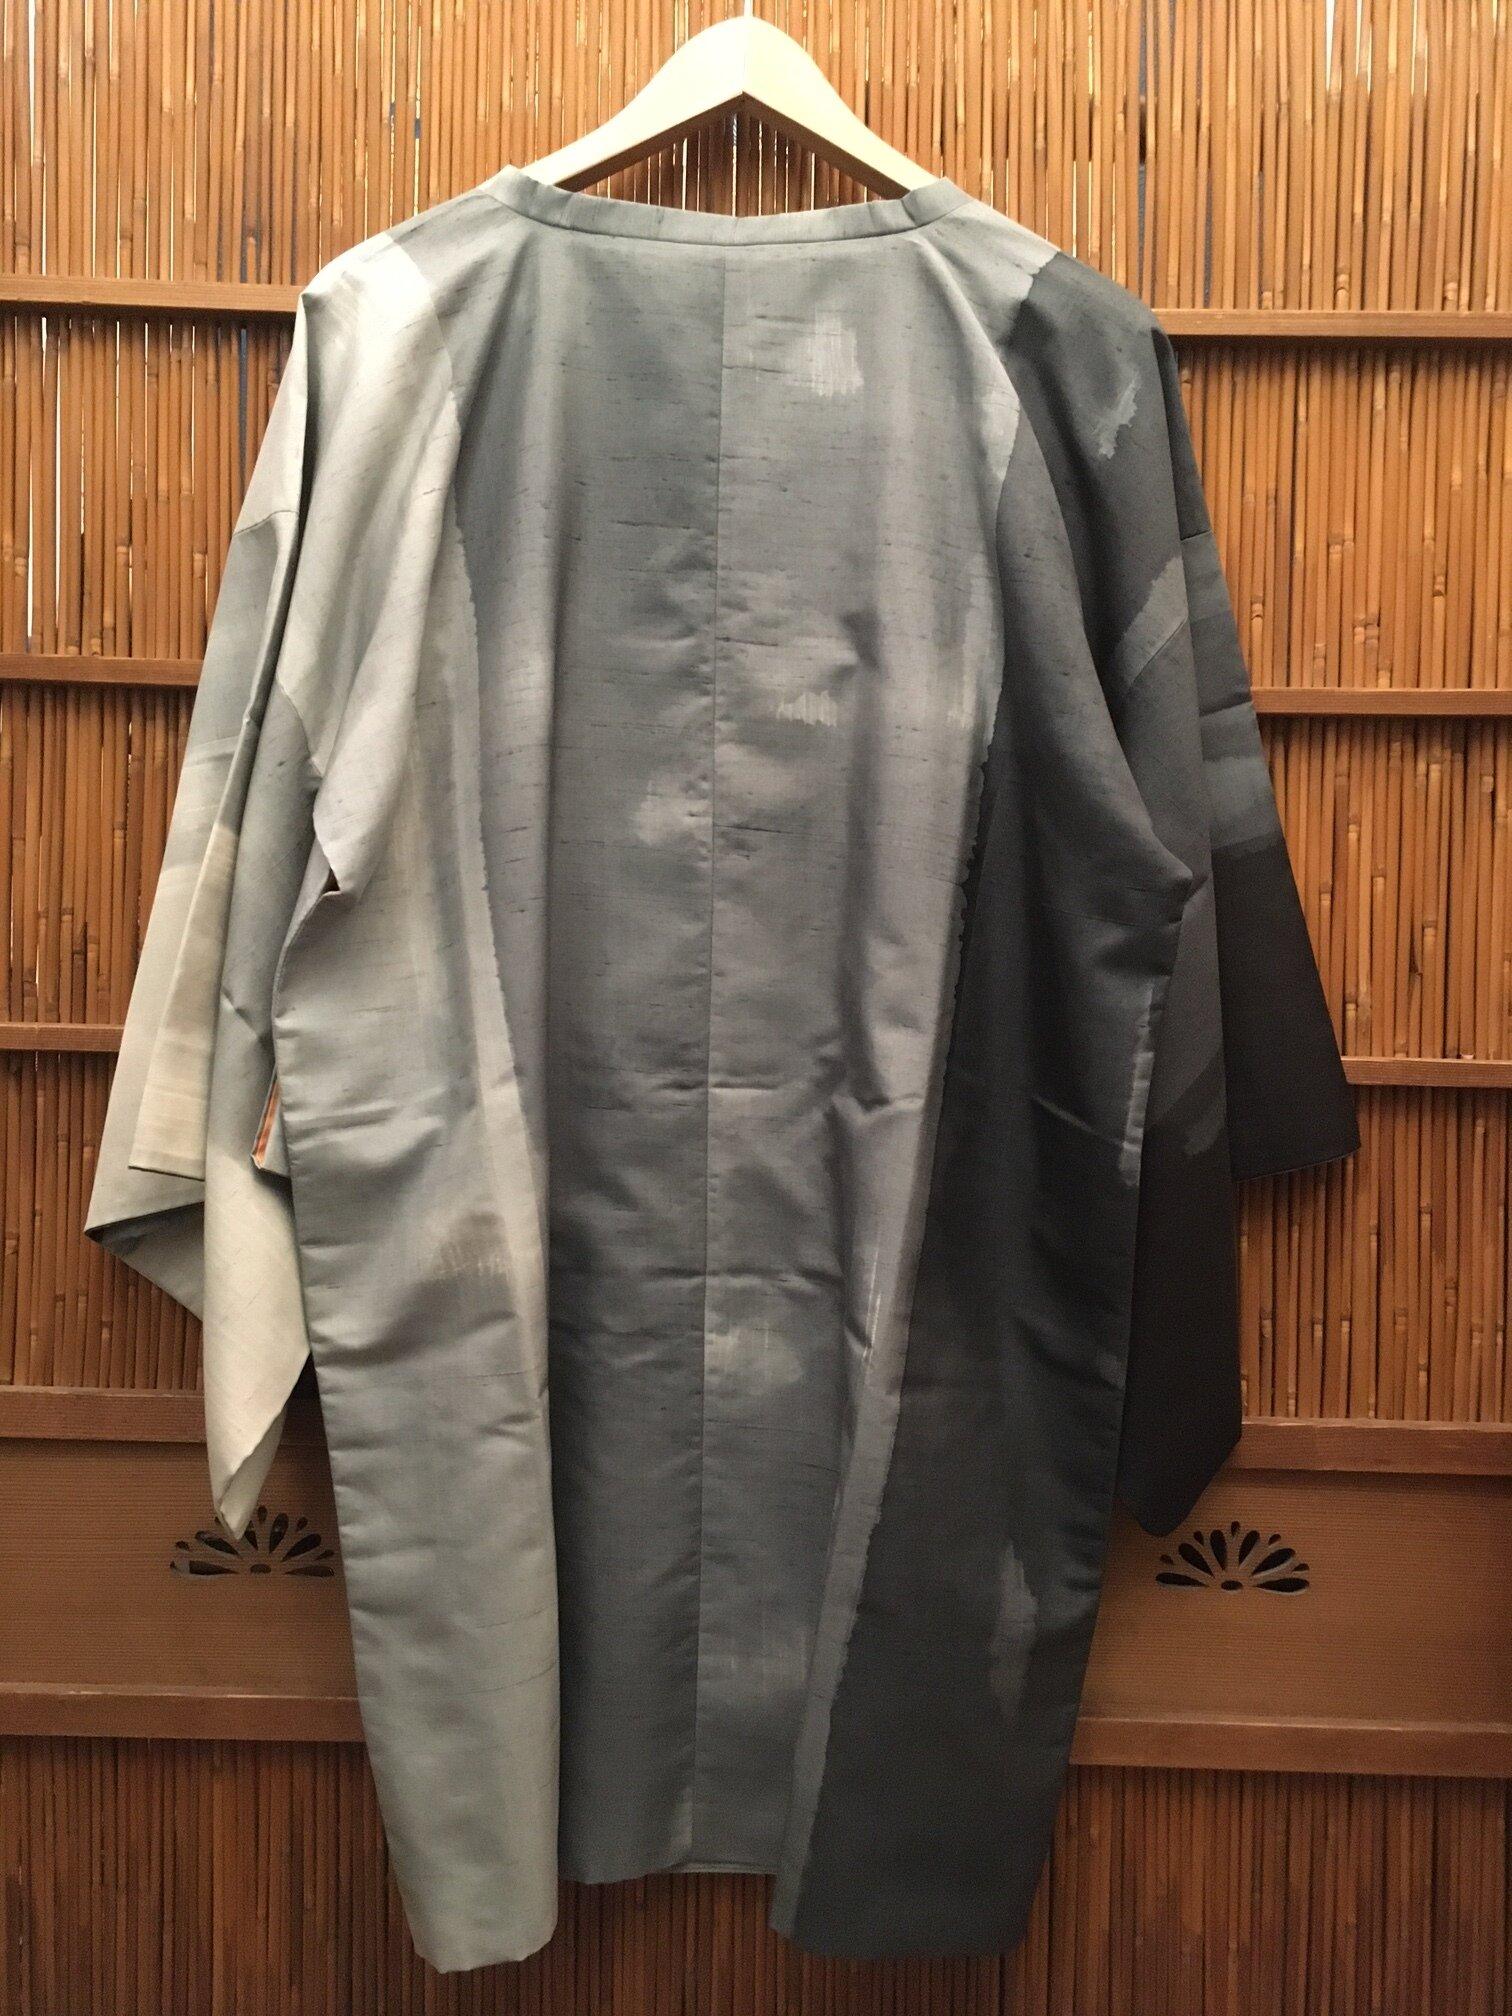 Dies ist eine dünne Schicht, die wir auf dem Kimono tragen. Es ist für den Frühling. 
Diese Art von Mantel wird auf Japanisch Michiyuki genannt.
Dieser Mantel wurde in Japan in den 1980er Jahren in der Showa-Ära